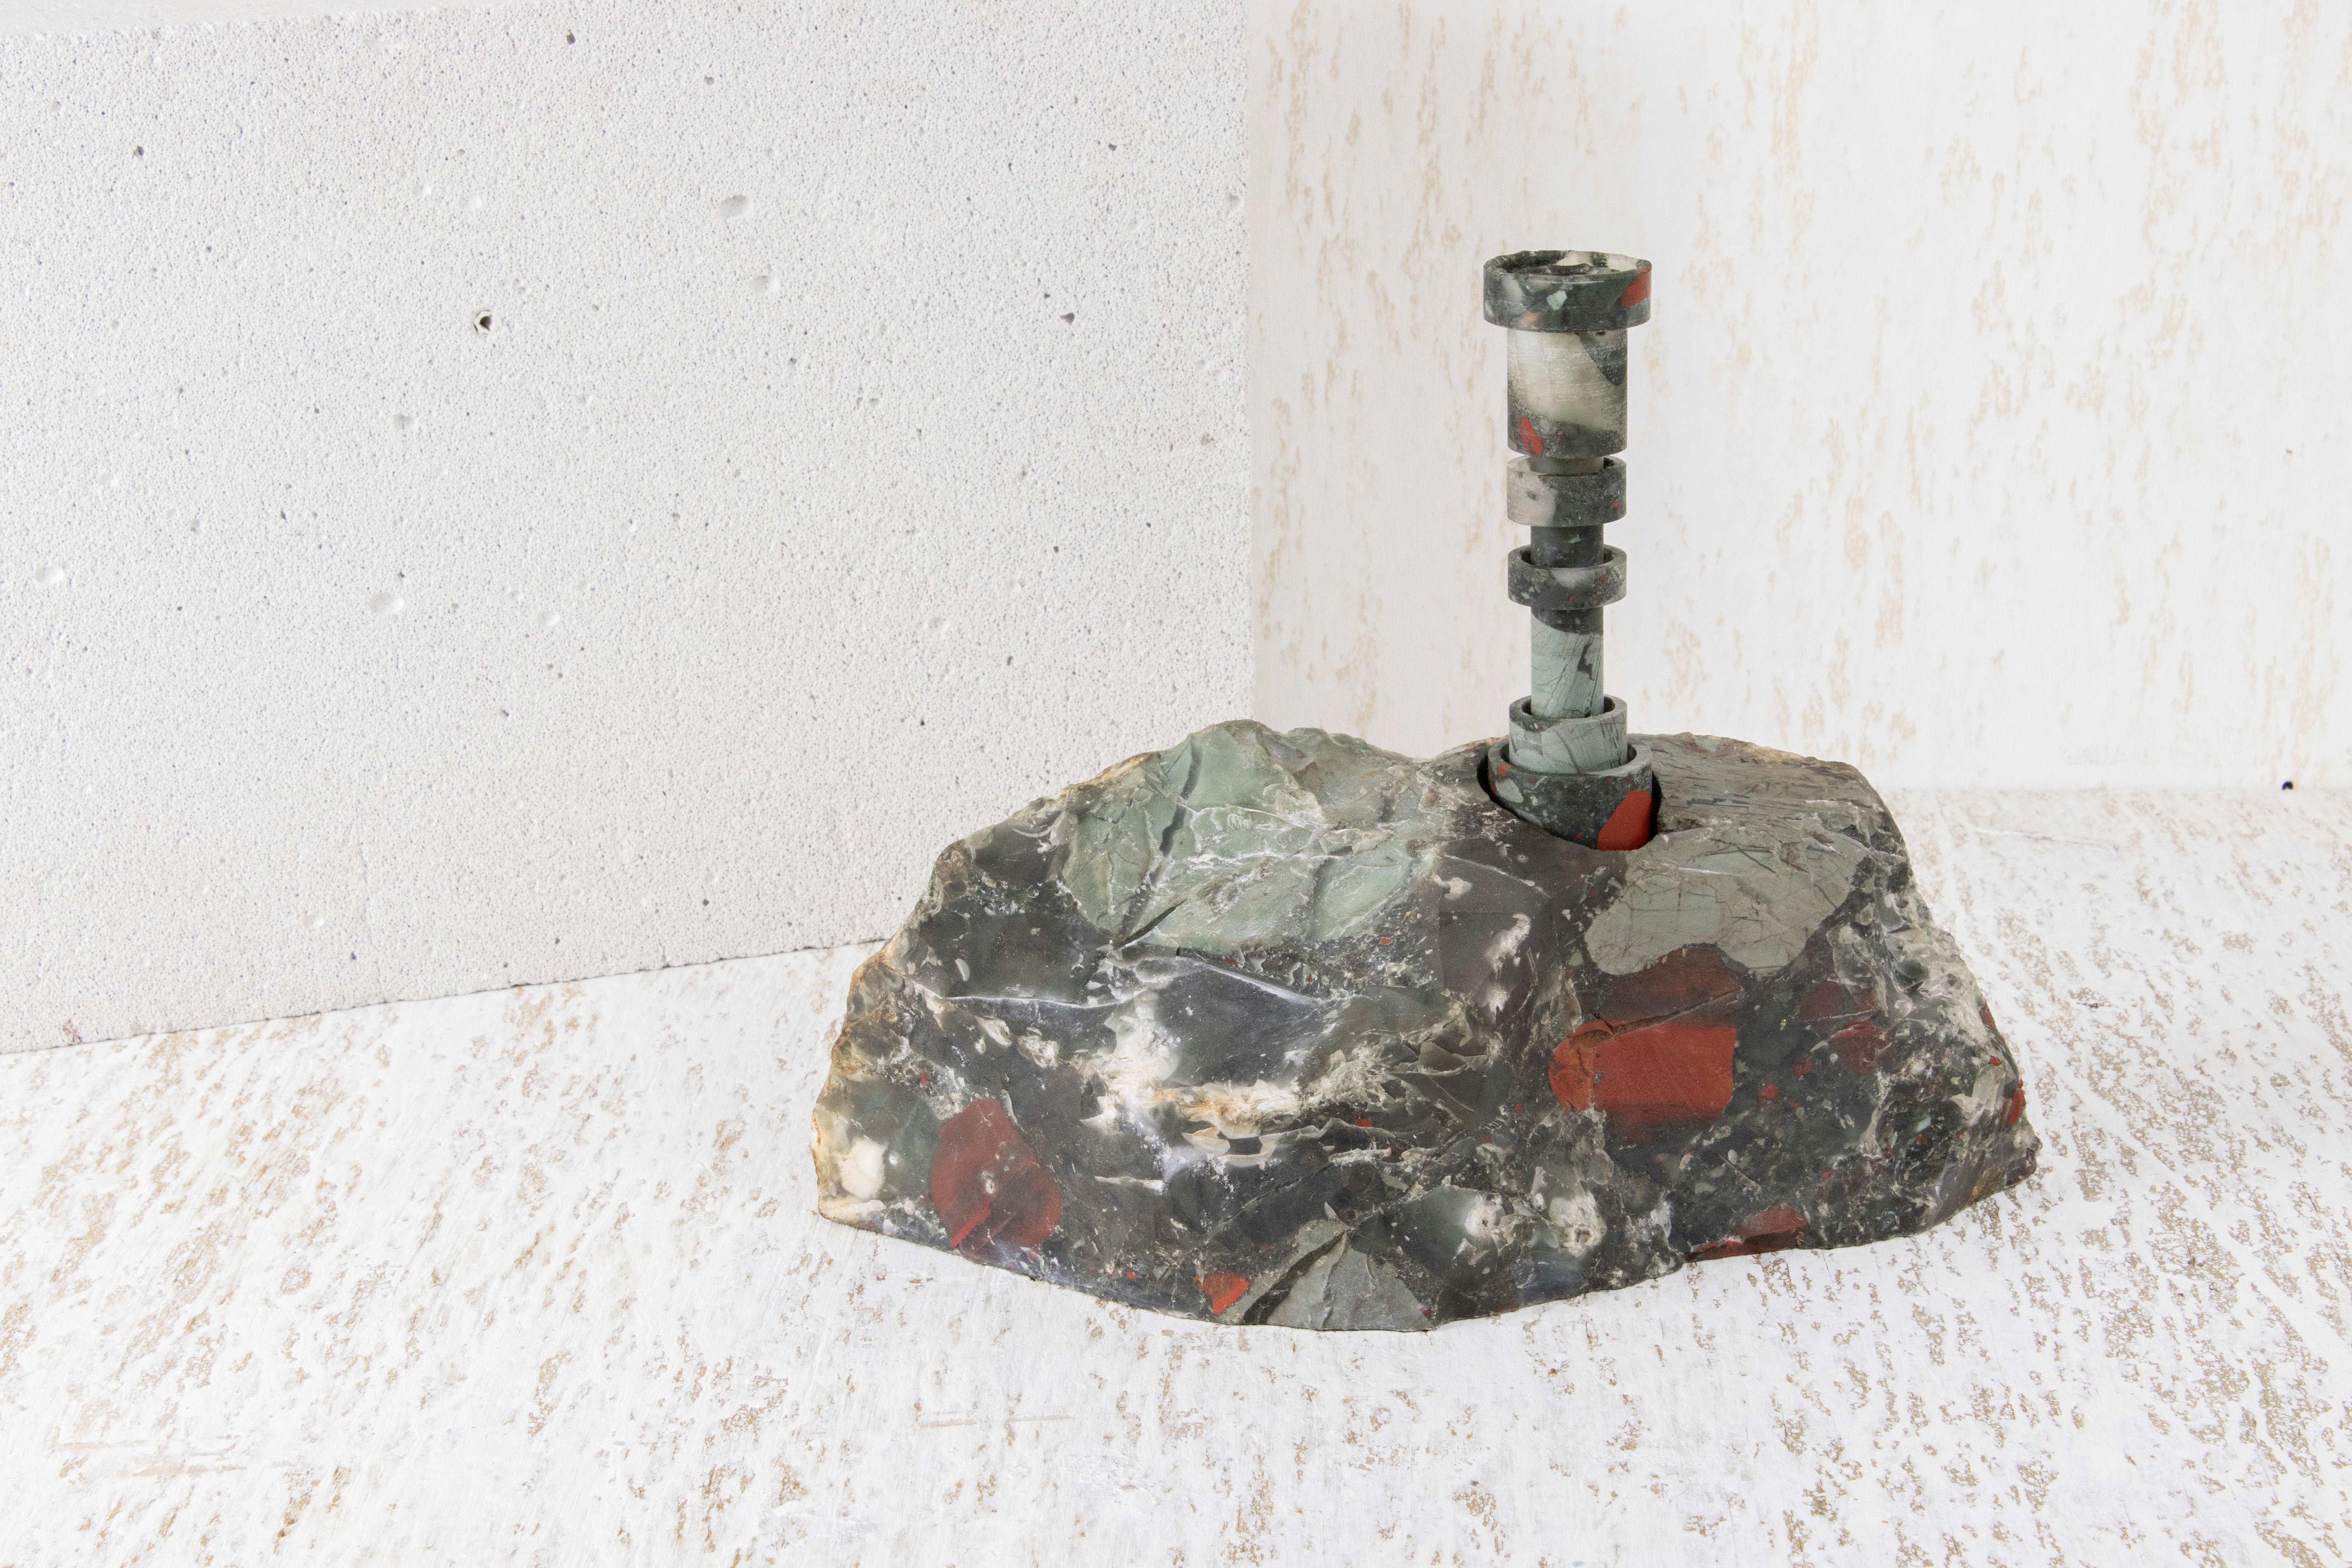 Heliotrope Seftonite Abra Kandelaber von Studio DO
Abmessungen: T 25 x B 11 x H 20,5 cm
MATERIALIEN: Heliotrop Seftonit Stein, Kupfer.
5 kg.

Stein und Feuer sind durch ein zeitloses Band verbunden. Das Funkeln, das durch das Aufeinandertreffen